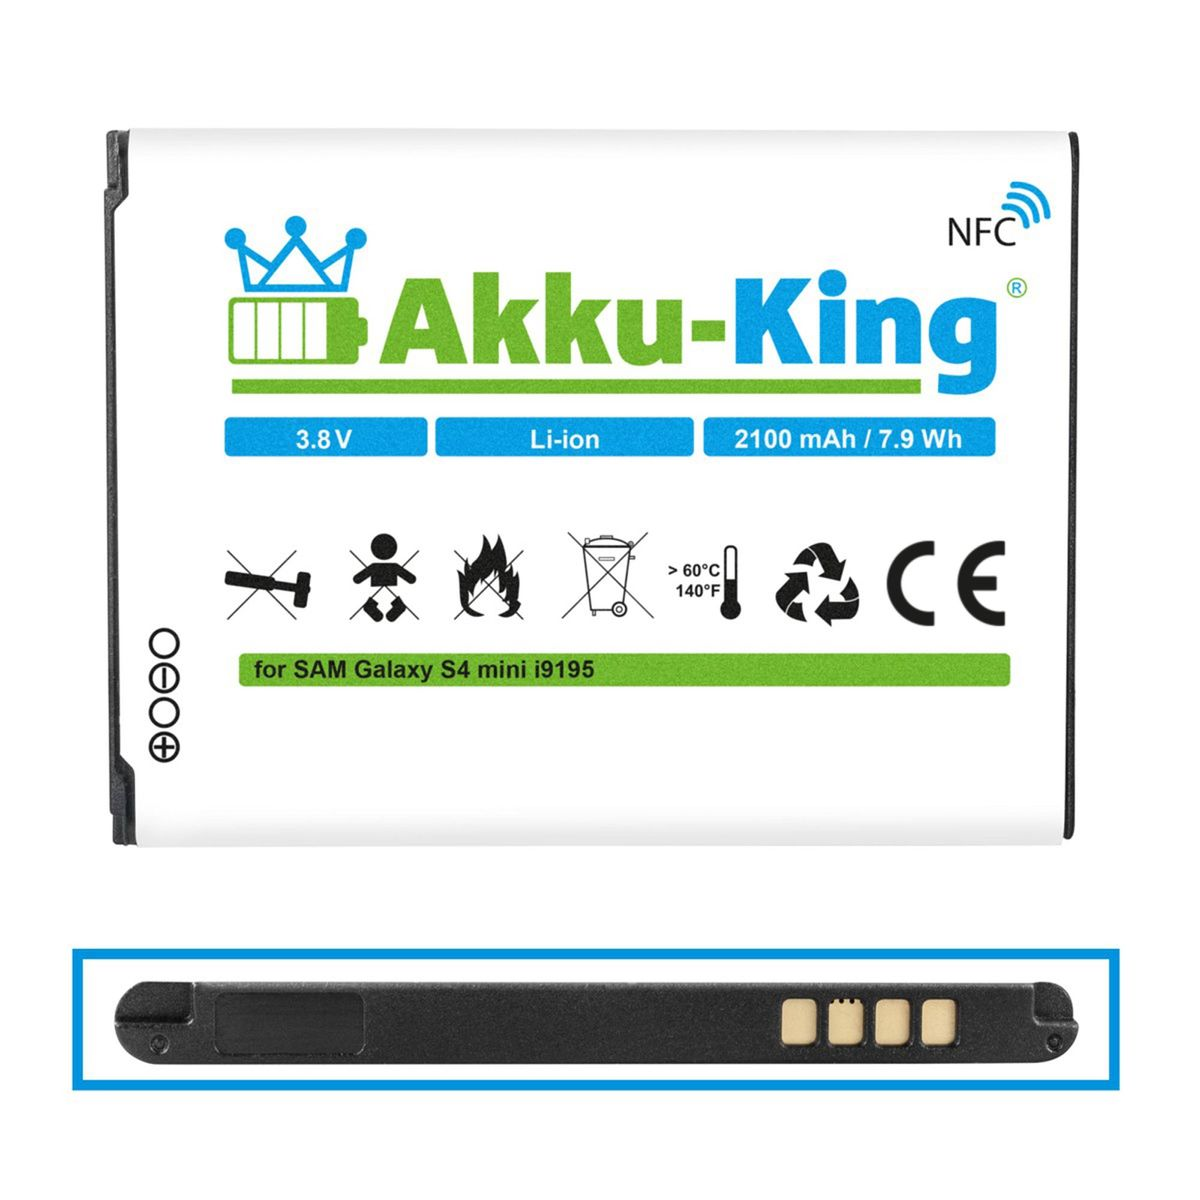 NFC Samsung kompatibel 2100mAh AKKU-KING Handy-Akku, mit EB-B500BE Li-Ion Volt, 3.8 Akku